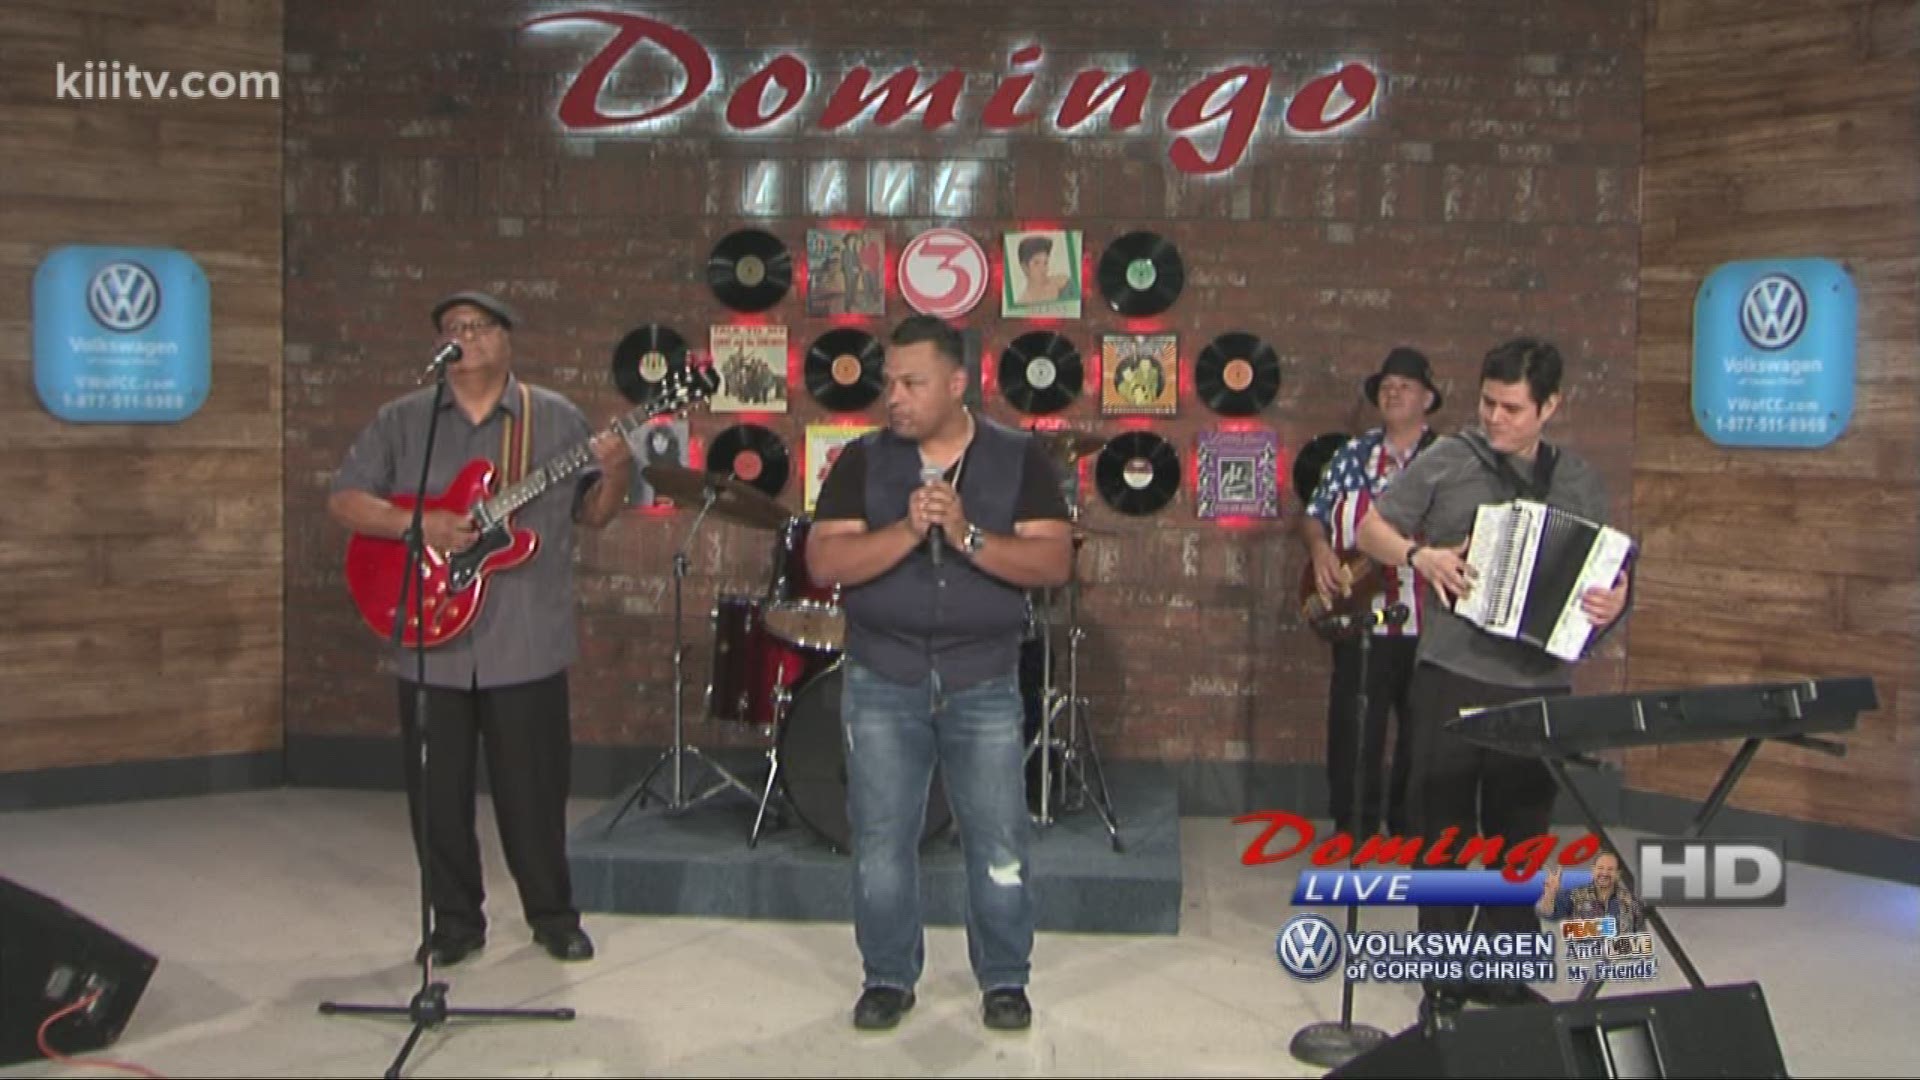 Jose Ricardo Y Legado performing "Porque Te Alejas" on Domingo Live.